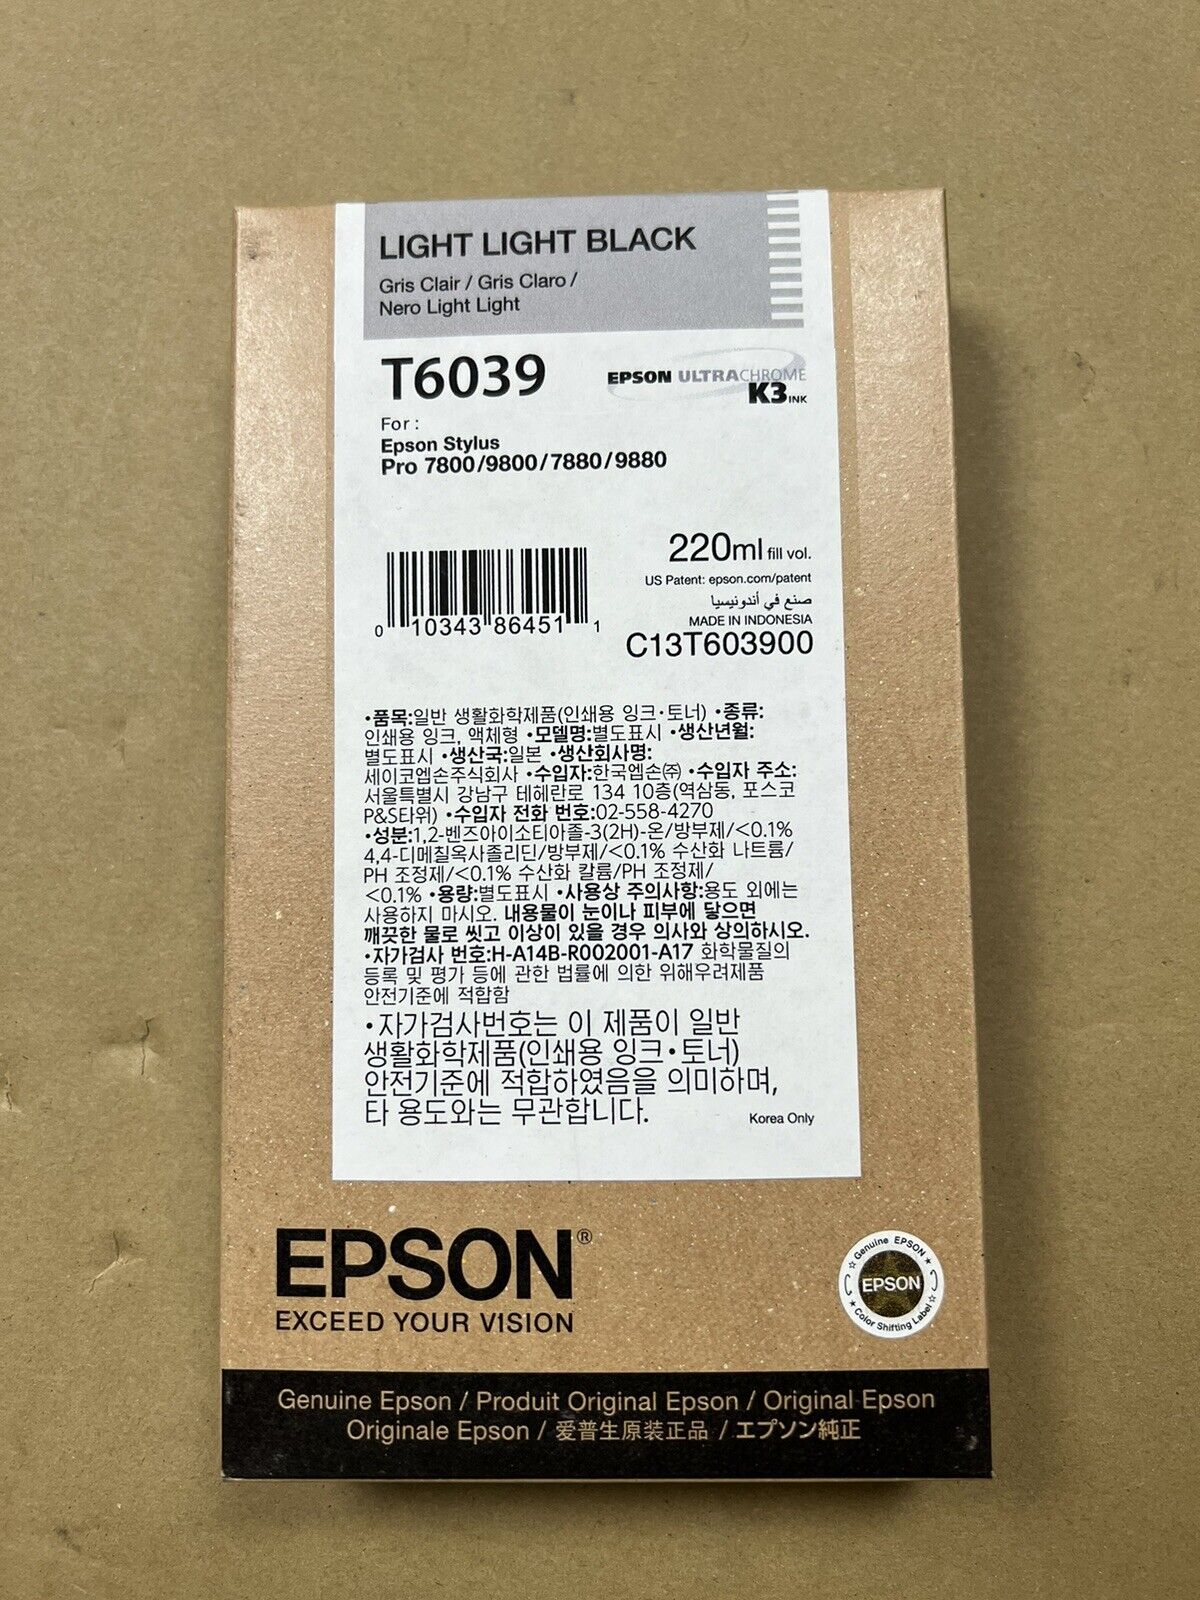 Epson T603 (T603900) Light Light Black Ink Cartridge